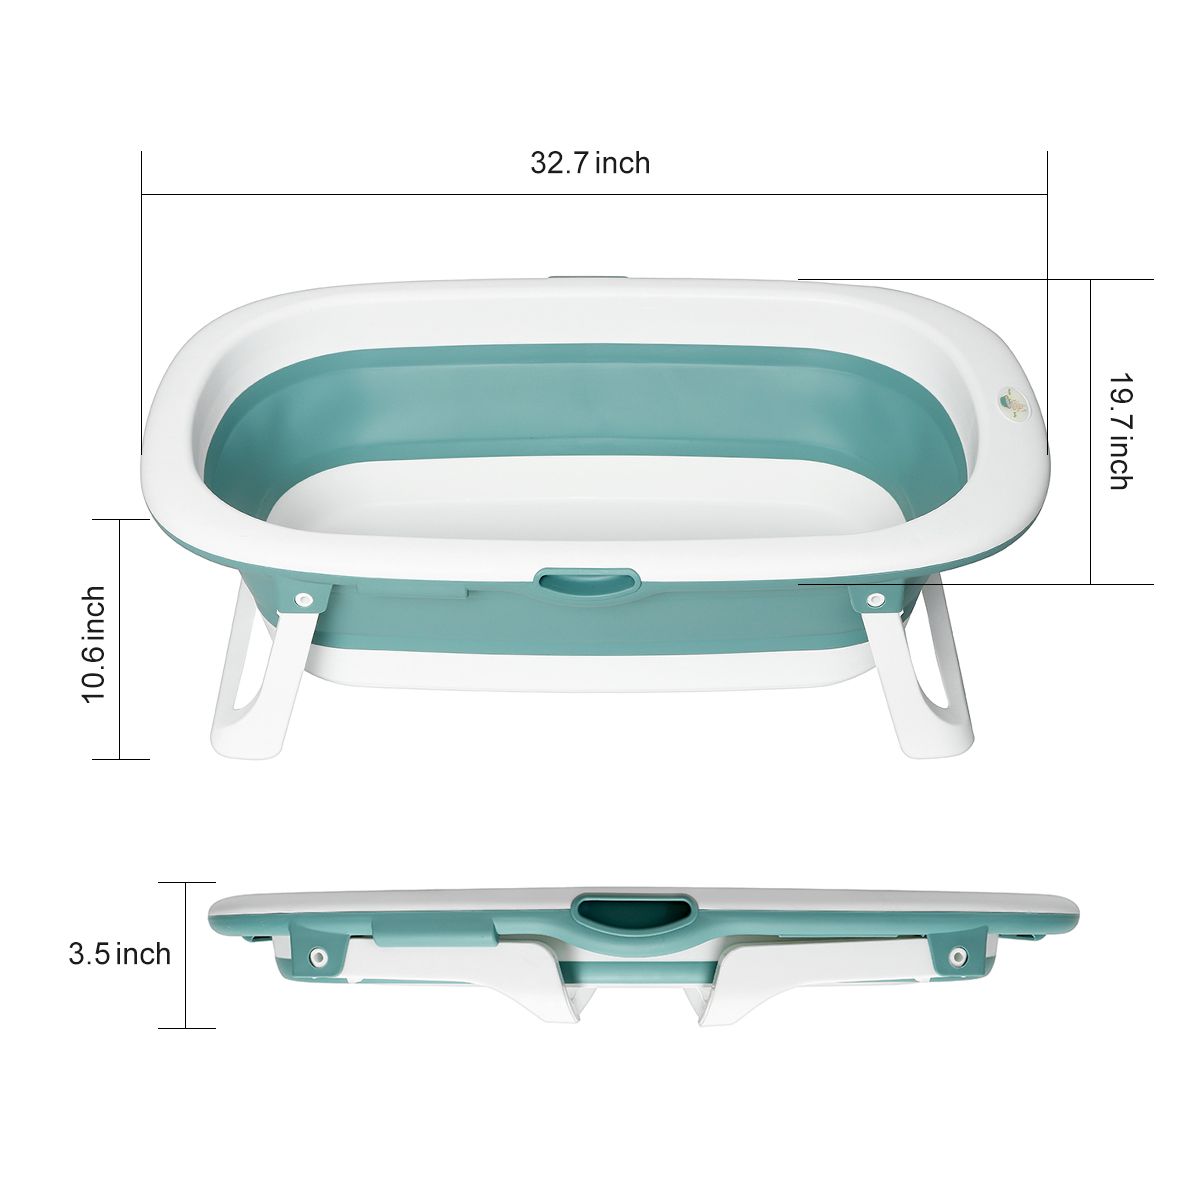 Foldable-Baby-Bathtub-Infant-Newborn-Bath-Tub-For-06-year-old-Children-1755340